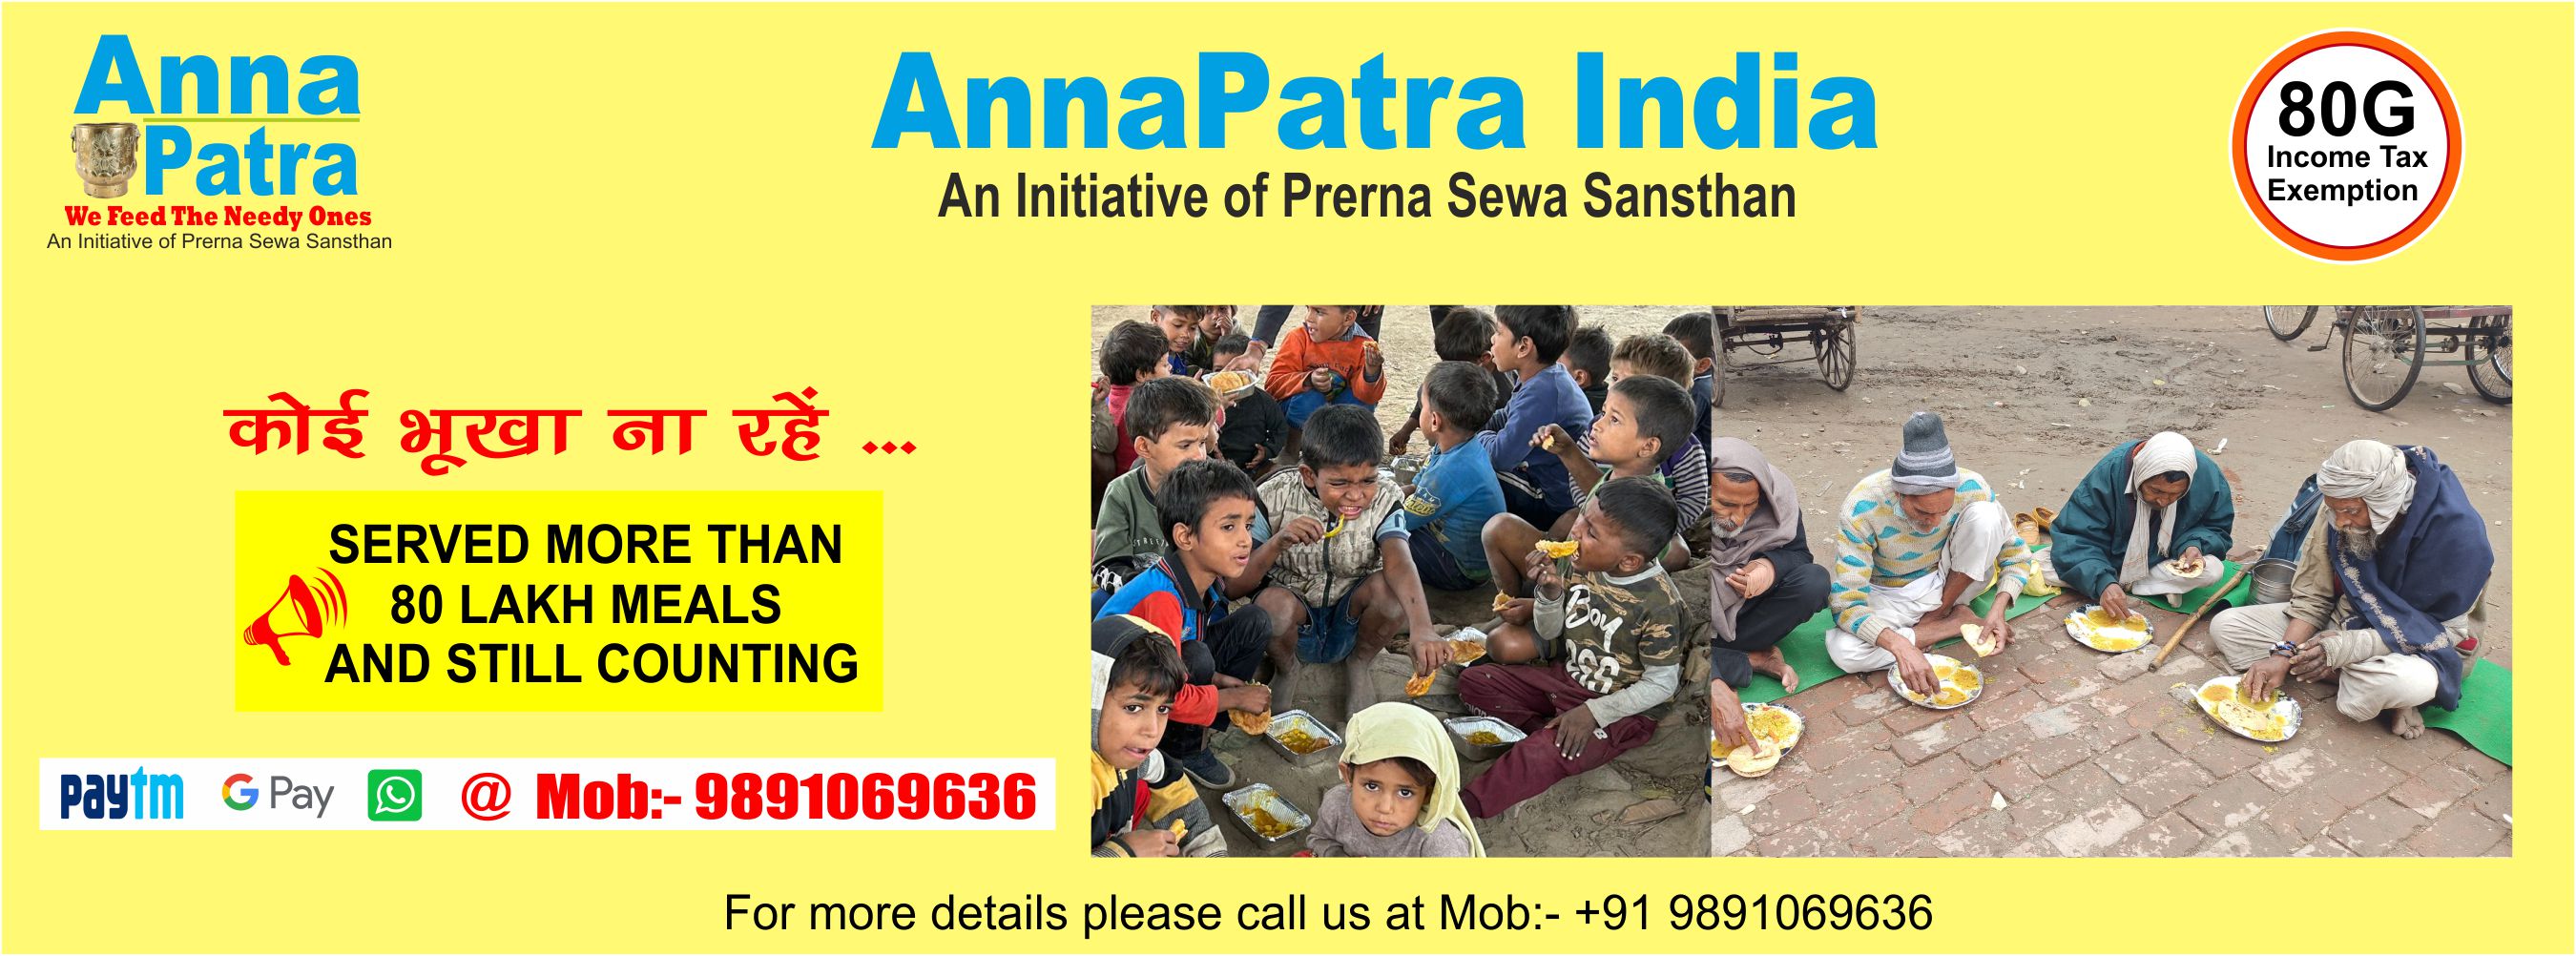 AnnaPatra India